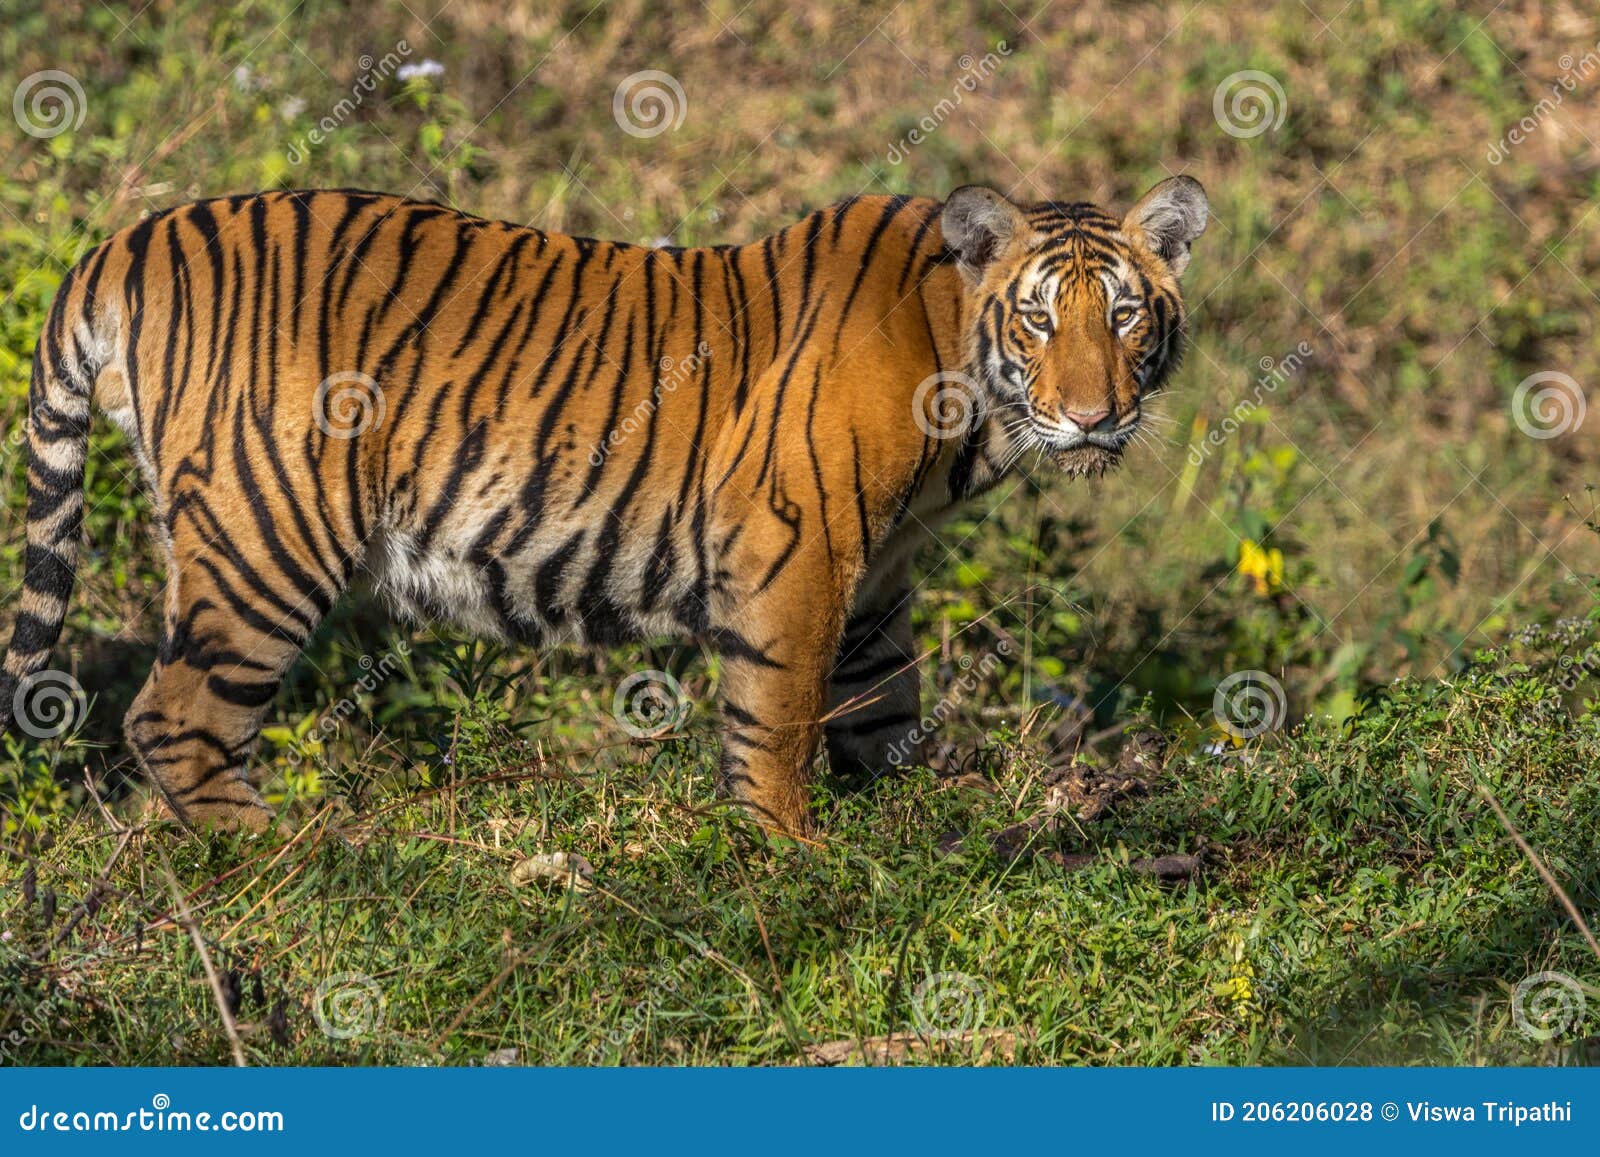 tiger staring at jungle safari jeep bandipur national park or bandipur tiger reserve